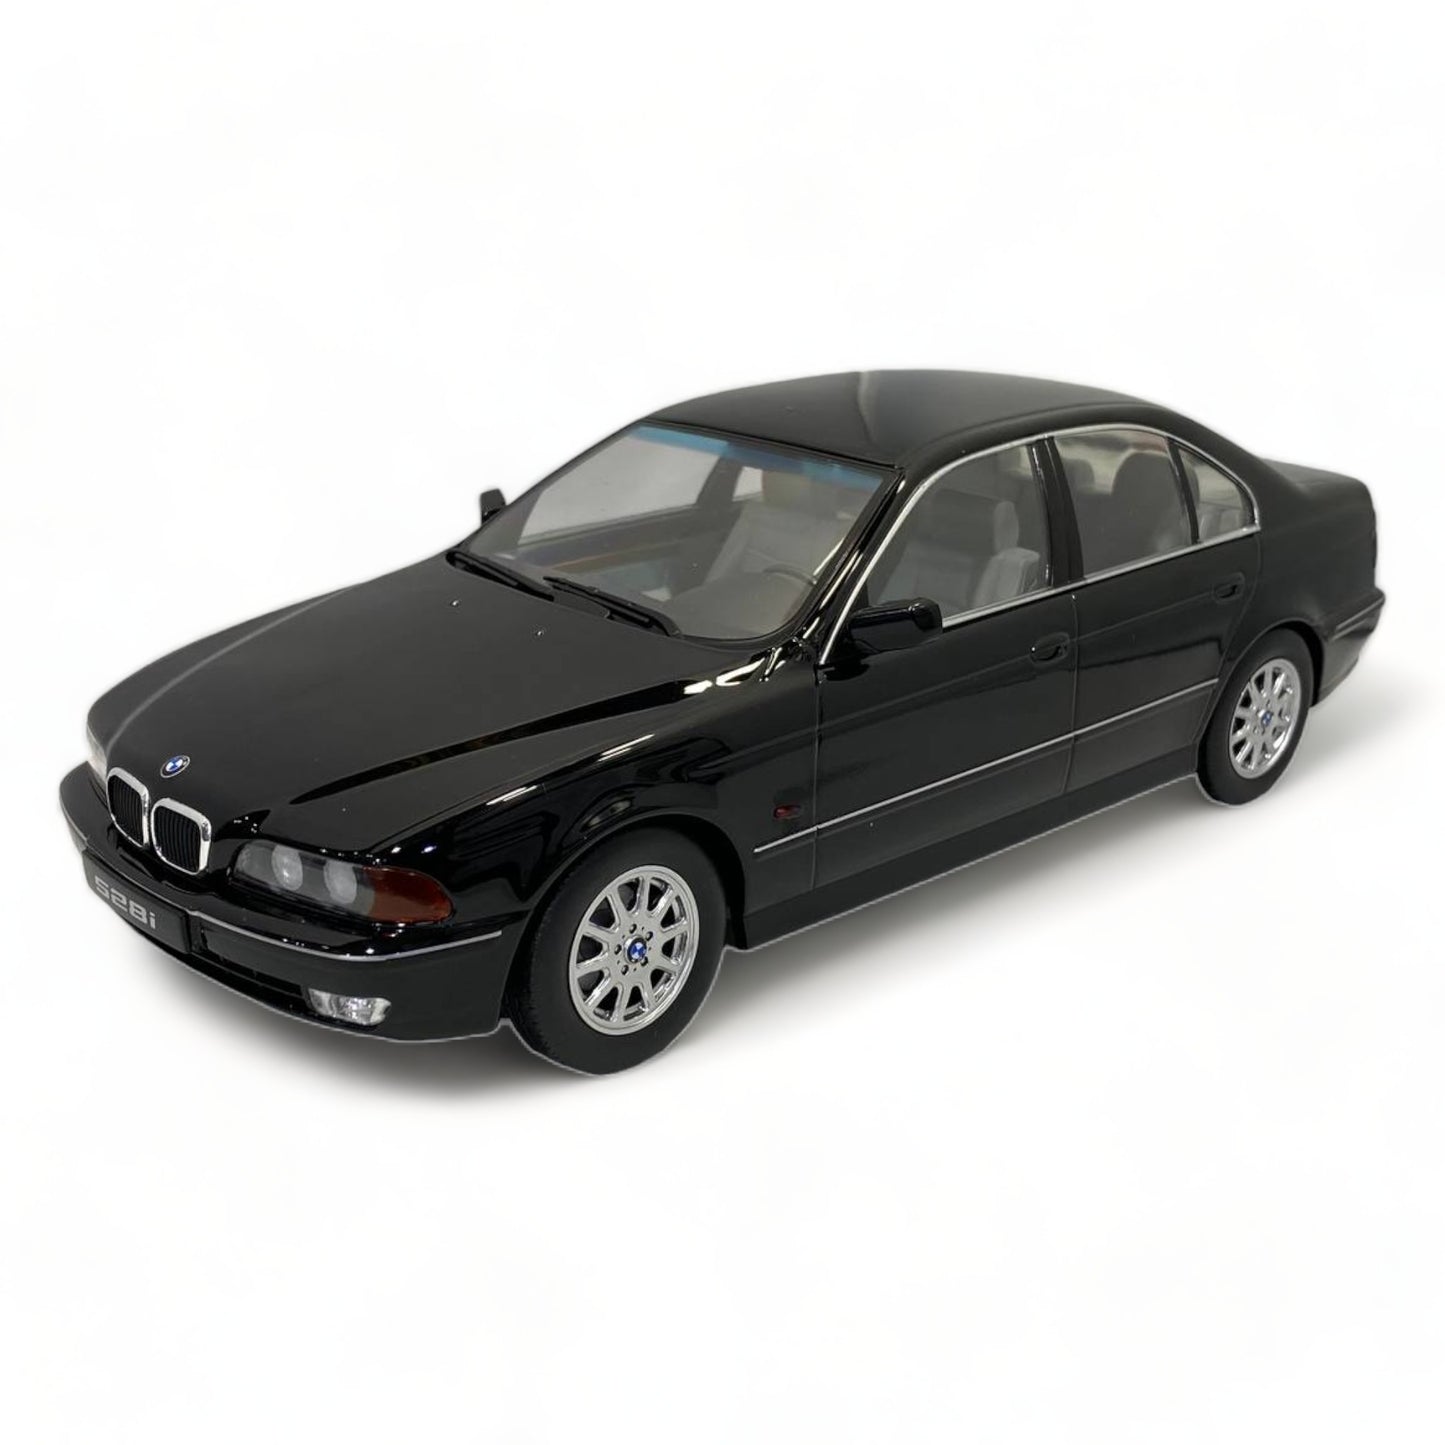 1/18 KK SCALE BMW 528i E39 SEDAN BLACK Model Car